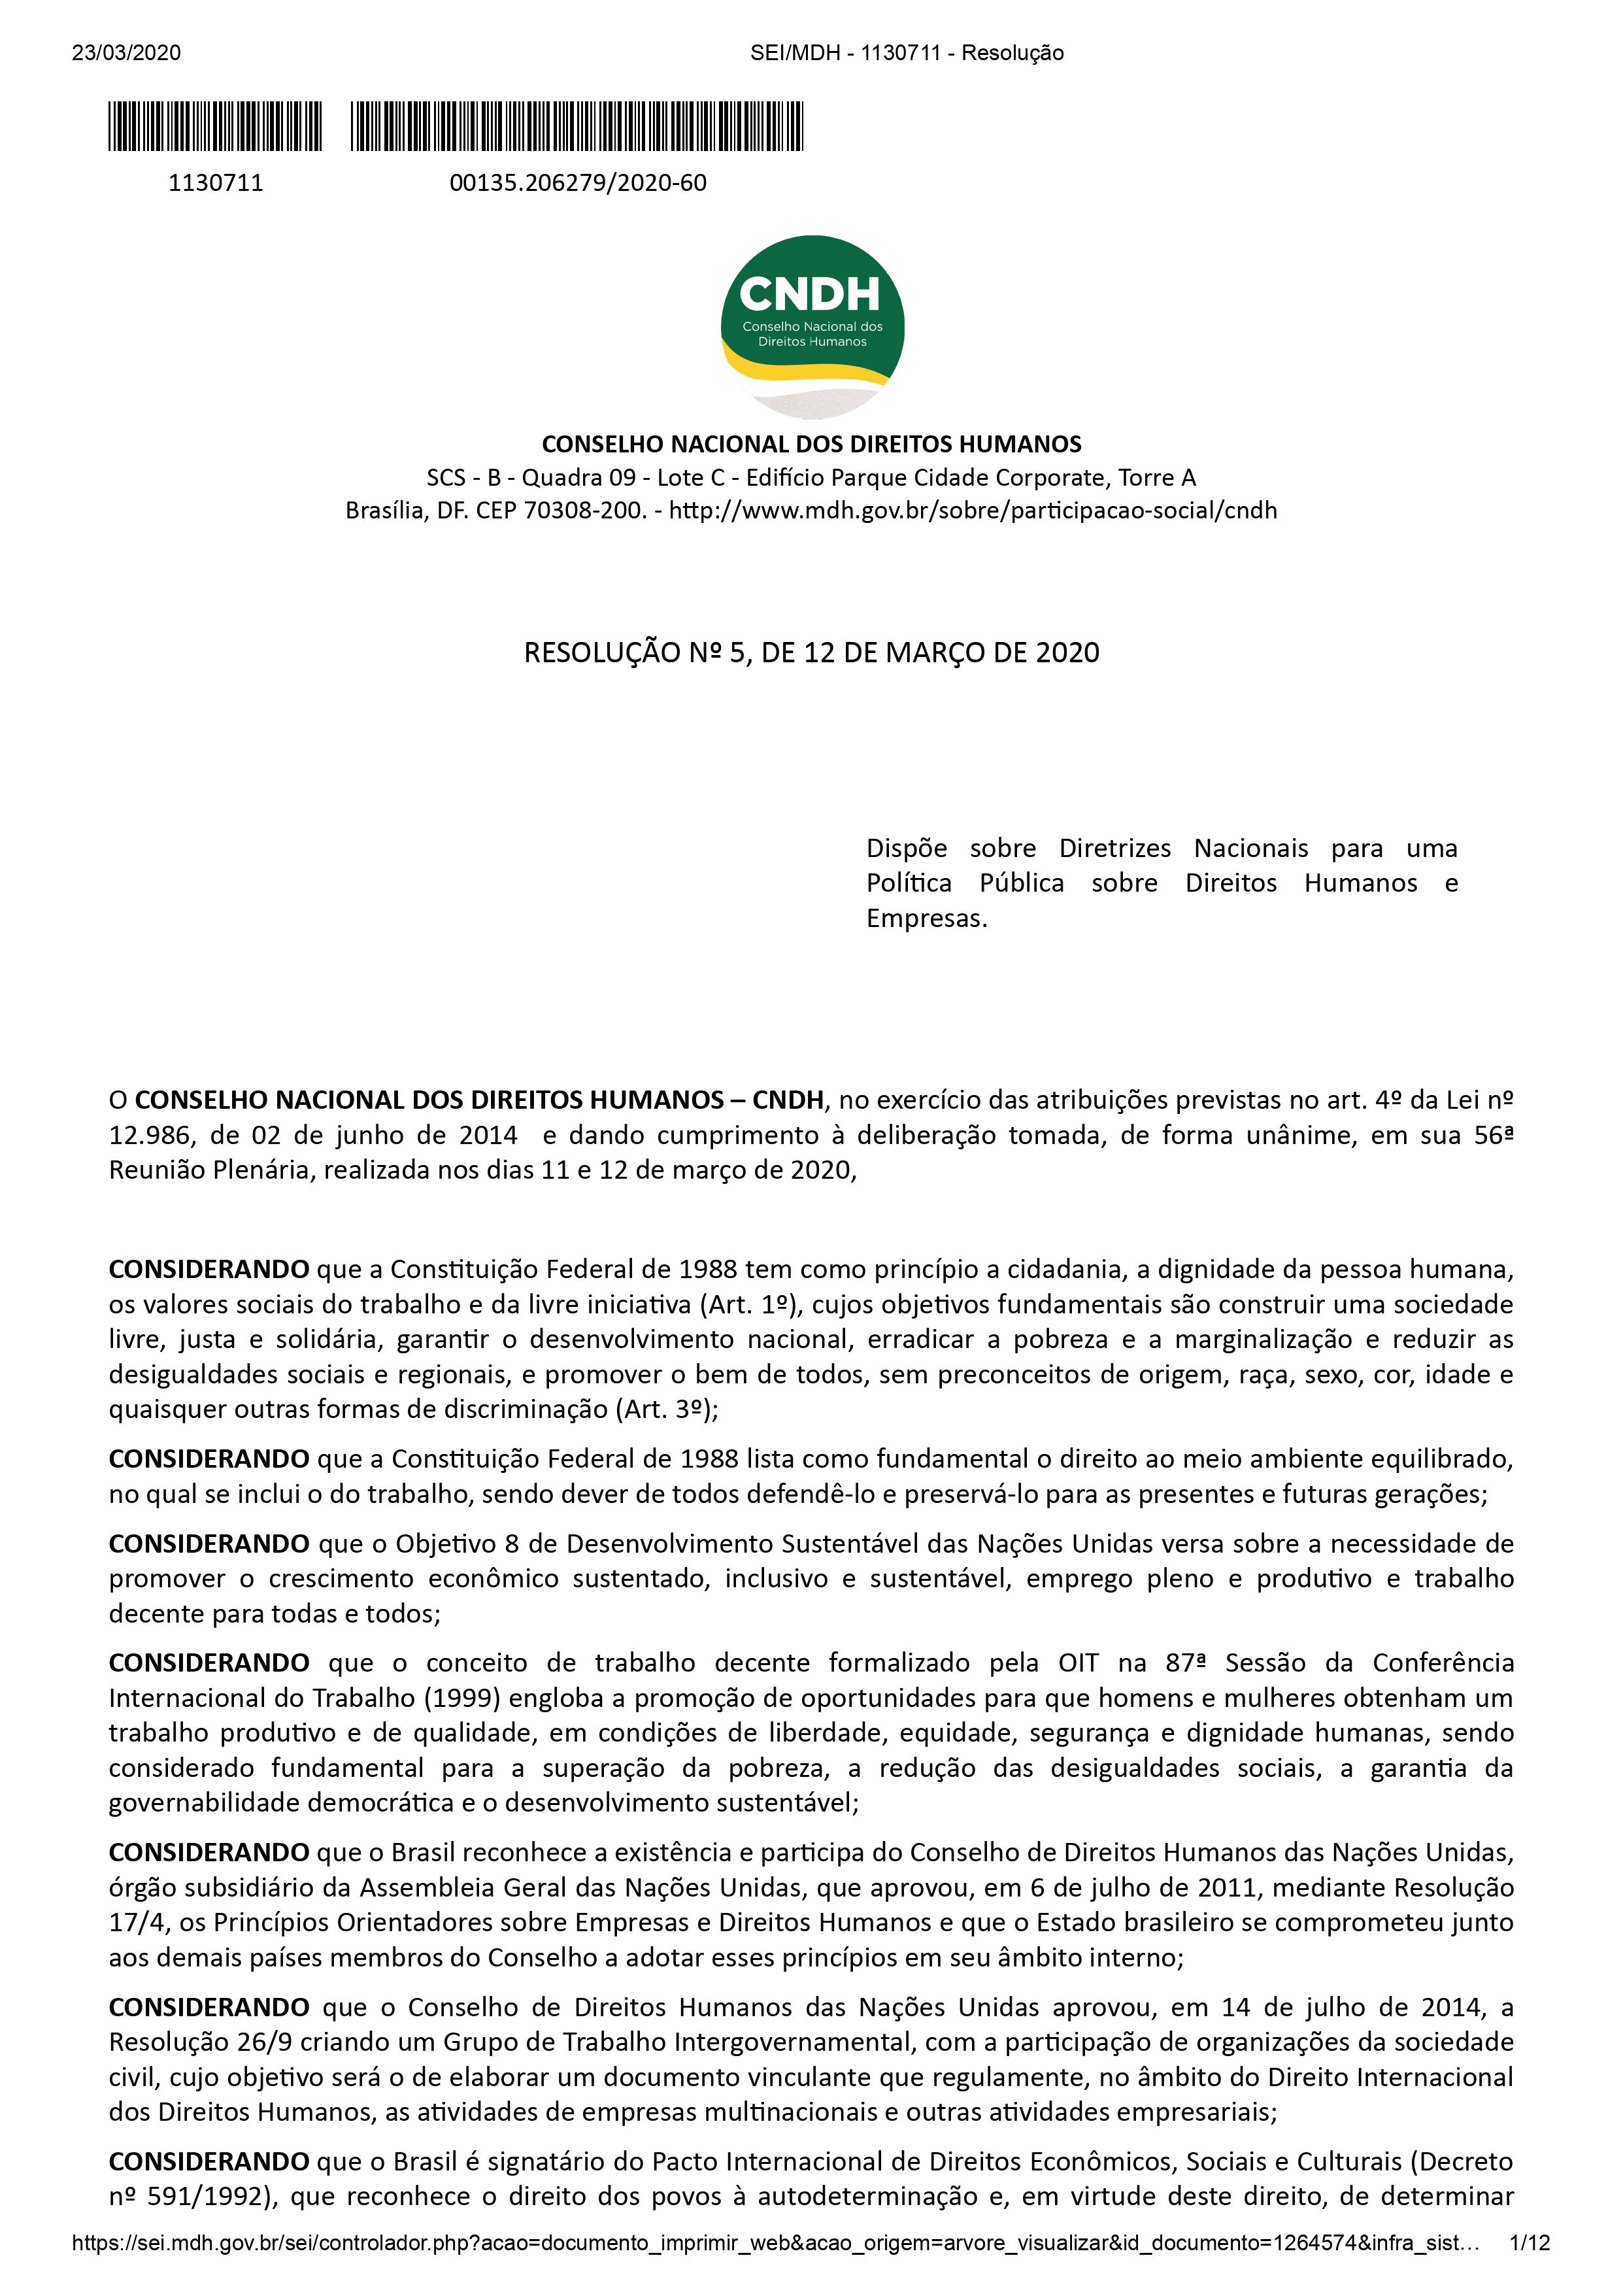 Resolution No 5/2020 do CNDH - Brazil